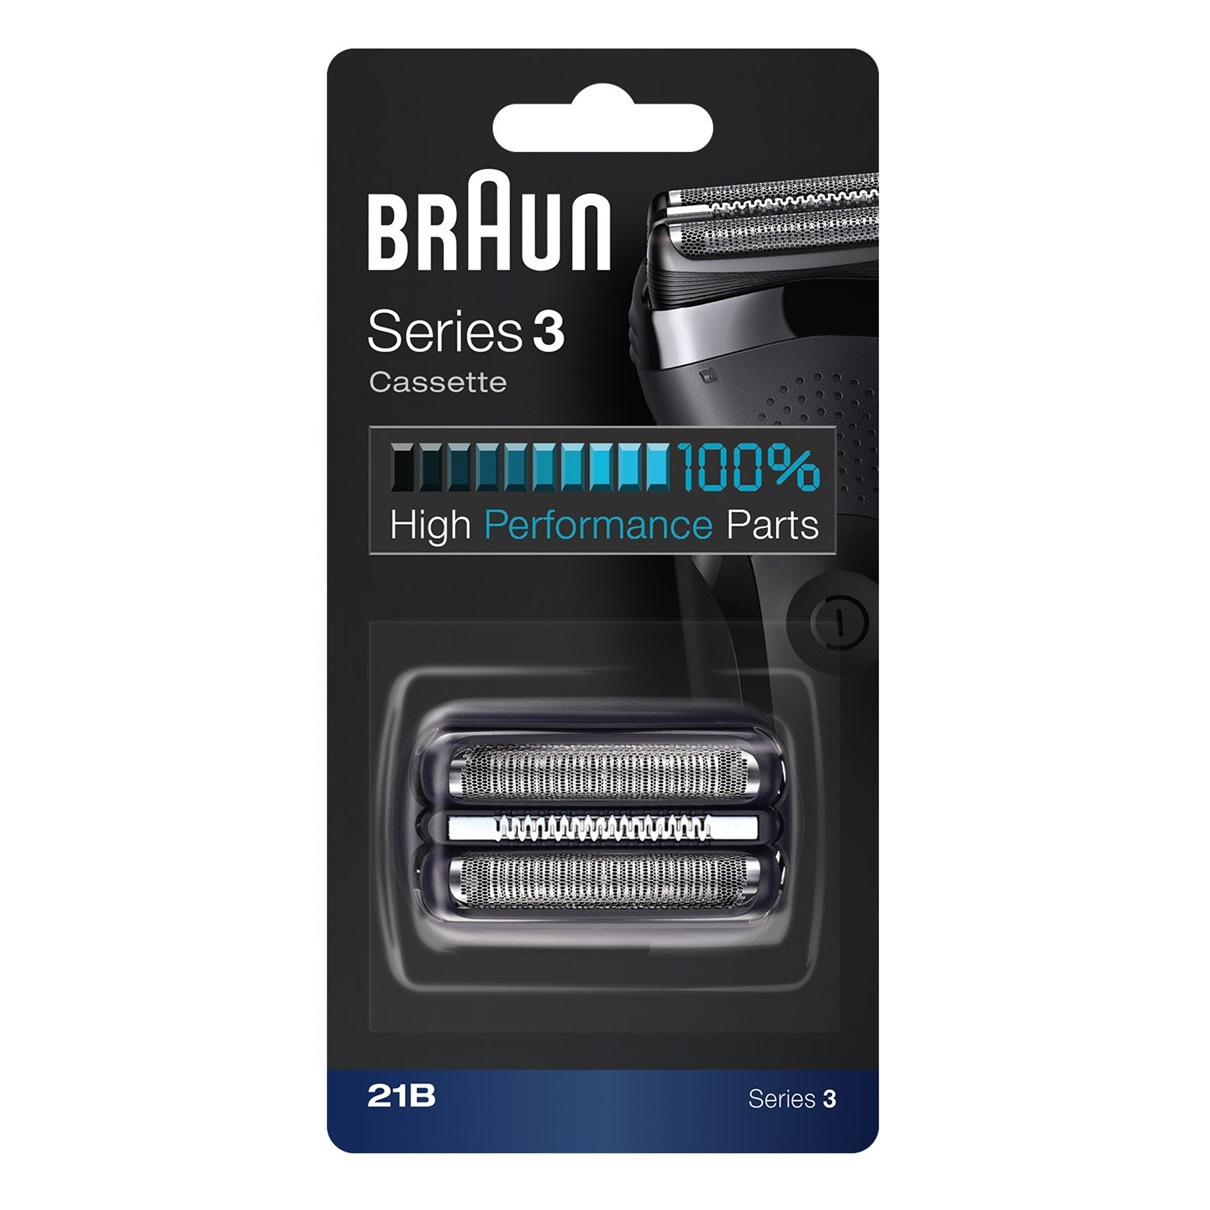 Сетка и режущий блок для бритв Braun 21B сетка и режущий блок braun s5 52b black черная